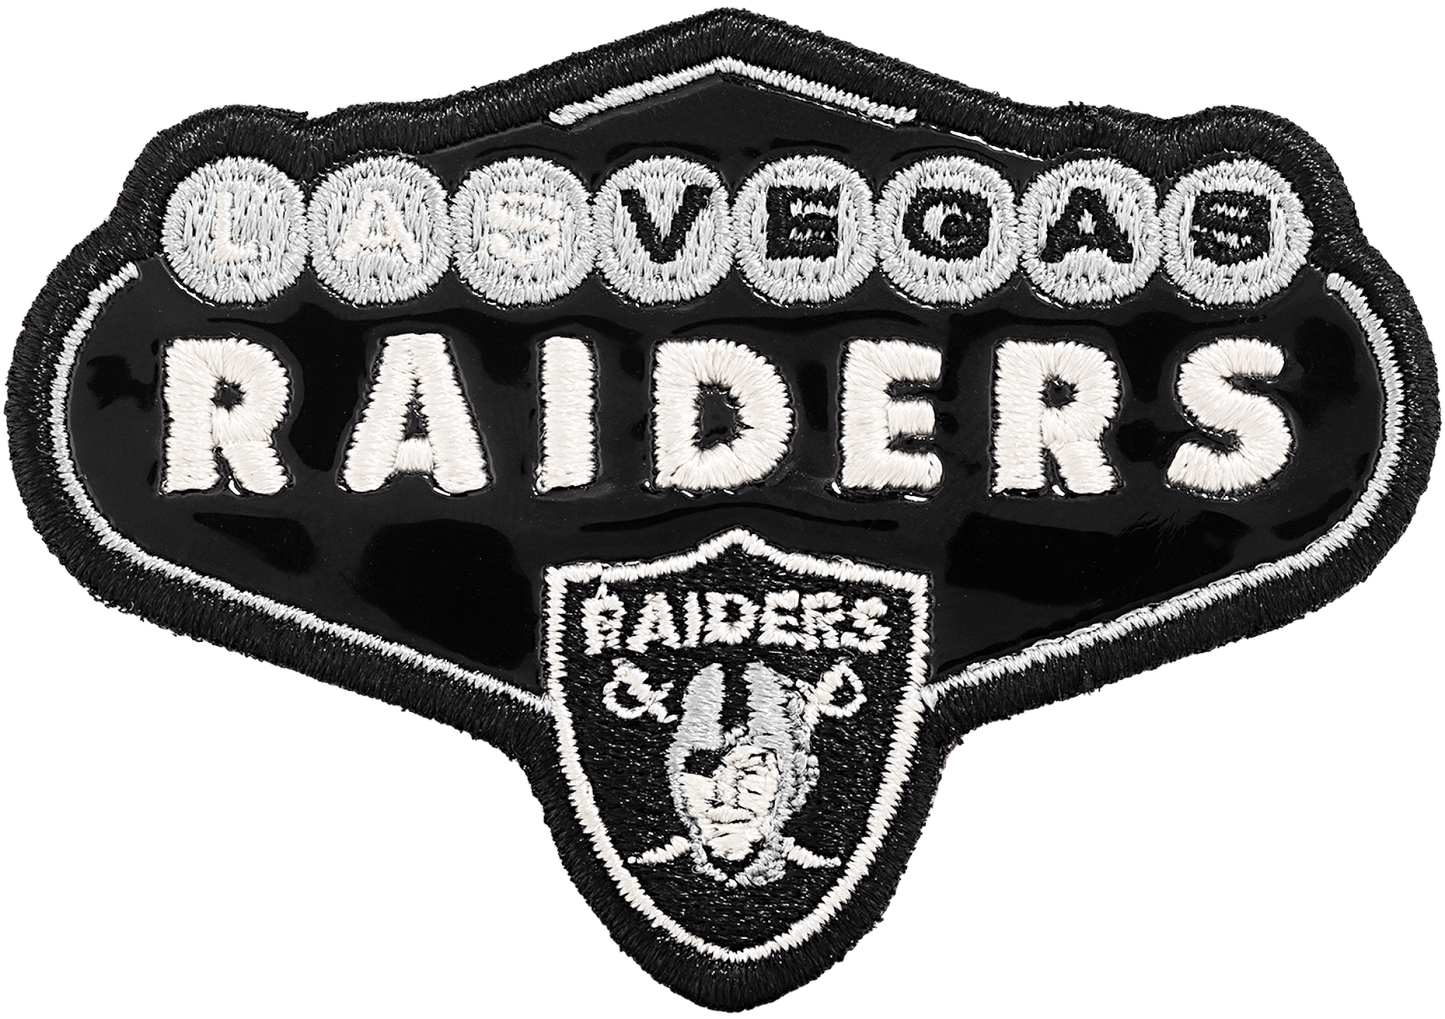 Las Vegas Raiders Patch